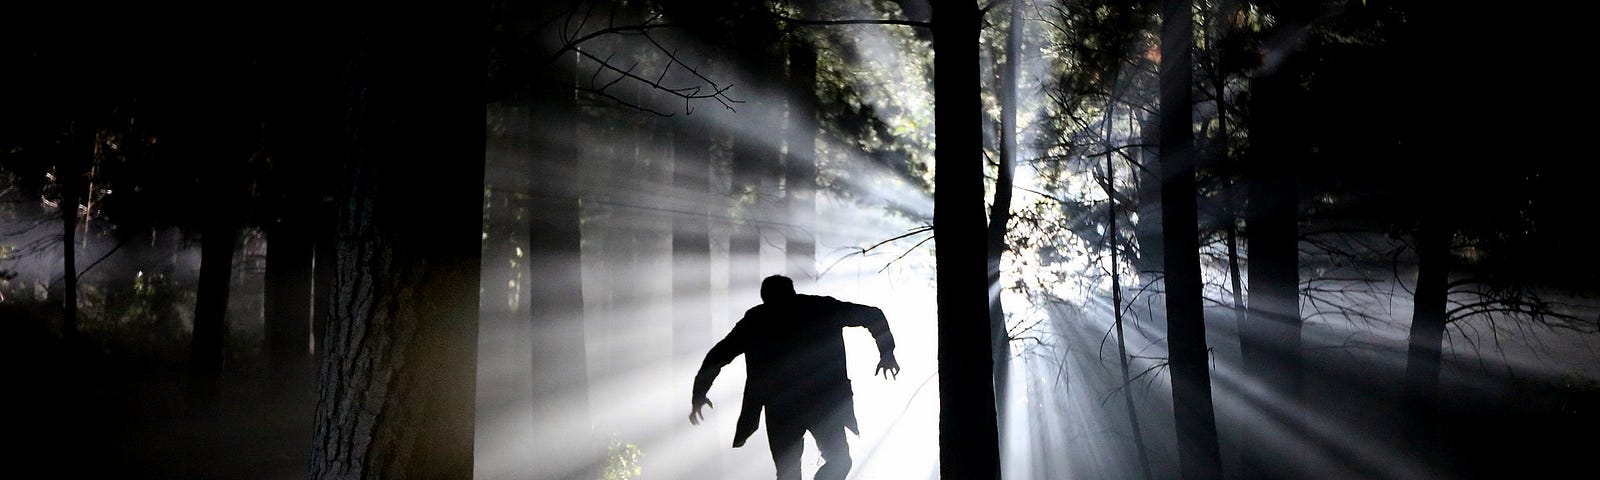 A man walks like Frankenstein’s monster through a dark forest.